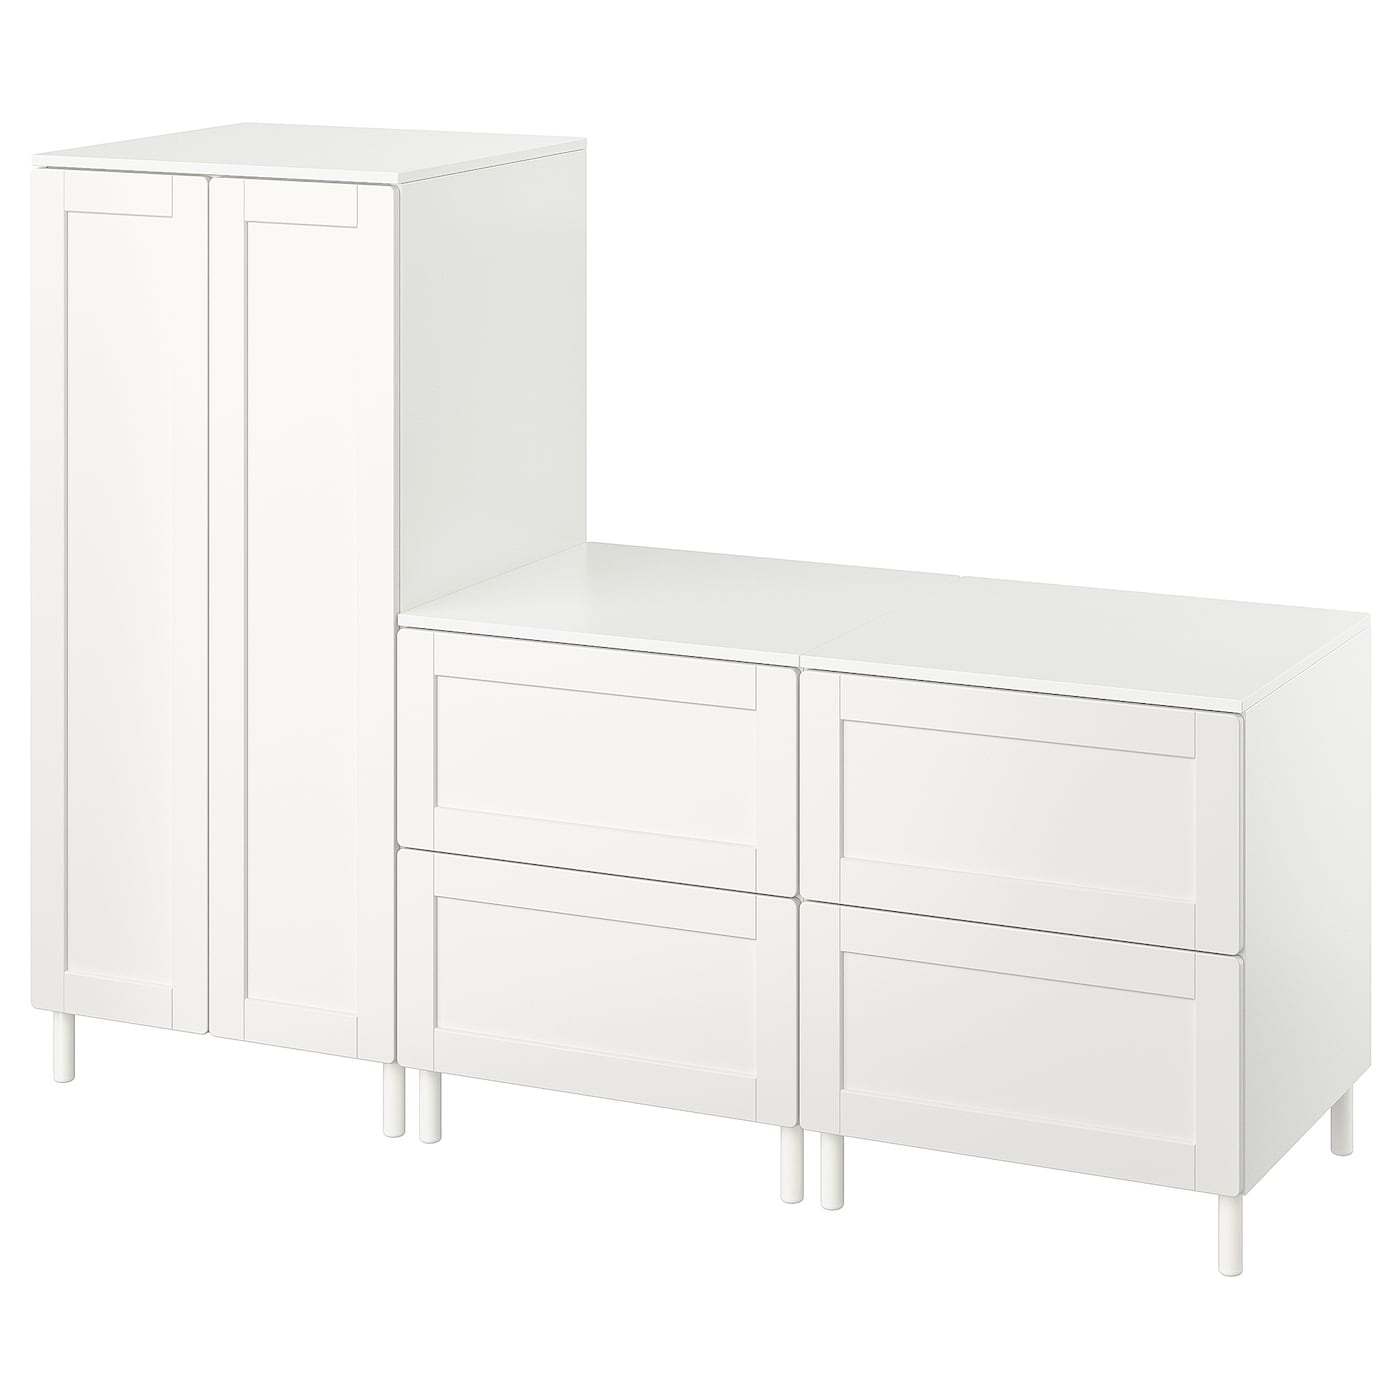 Детская гардеробная комбинация - IKEA PLATSA SMÅSTAD/SMASTAD, 180x57x133см, белый, ПЛАТСА СМОСТАД ИКЕА